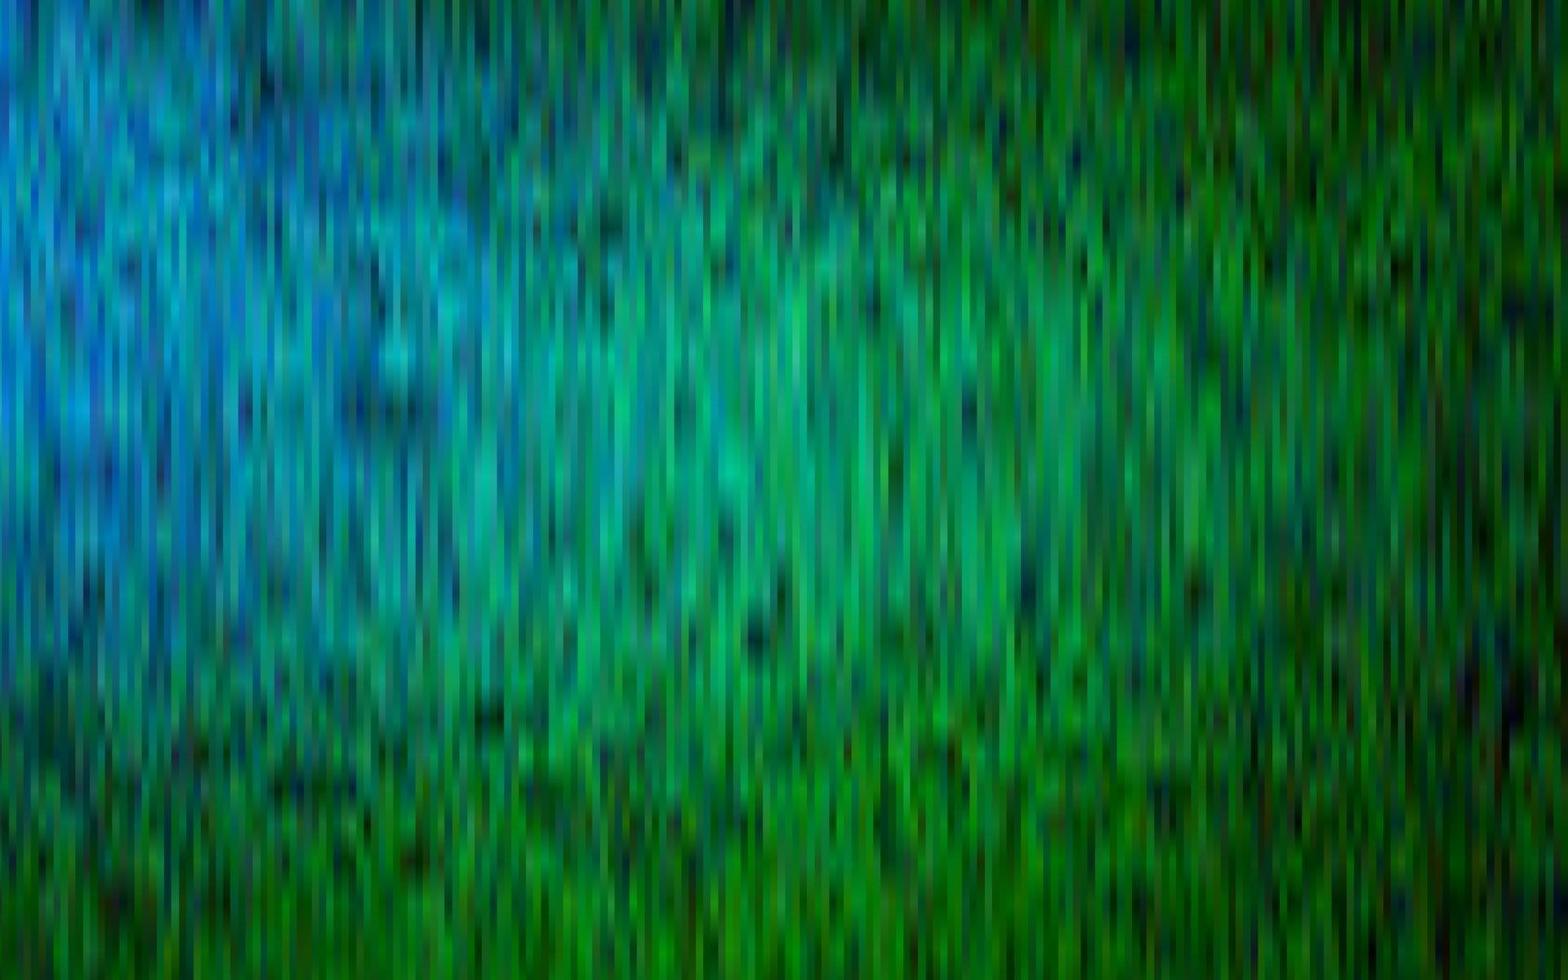 pano de fundo vector azul e verde escuro com linhas longas.